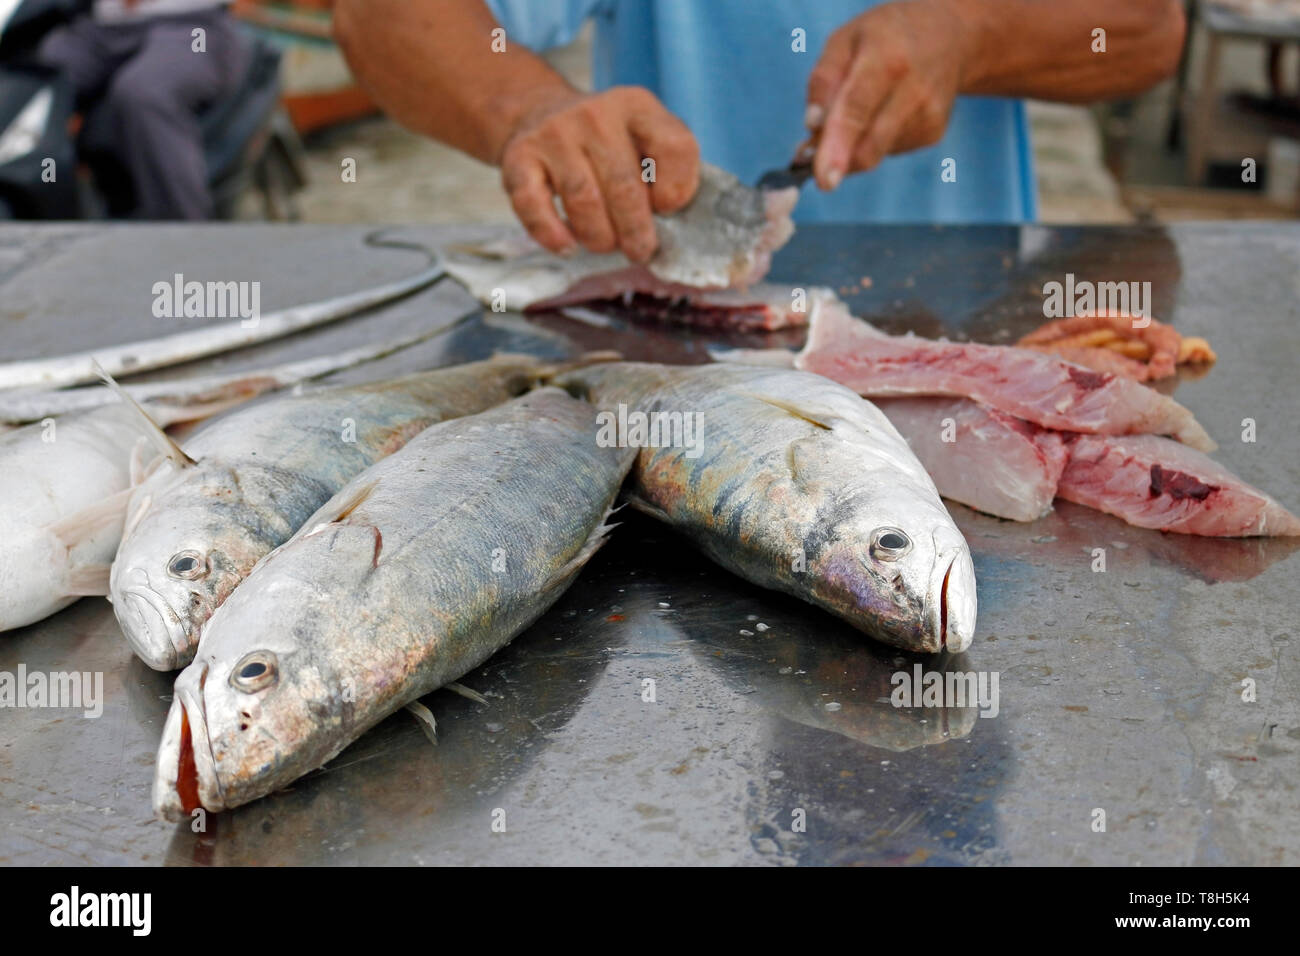 El pescador limpia el pescado fresco que ha capturado en el mar. Los clientes están esperando. Él hábilmente usa un cuchillo afilado. Foto de stock